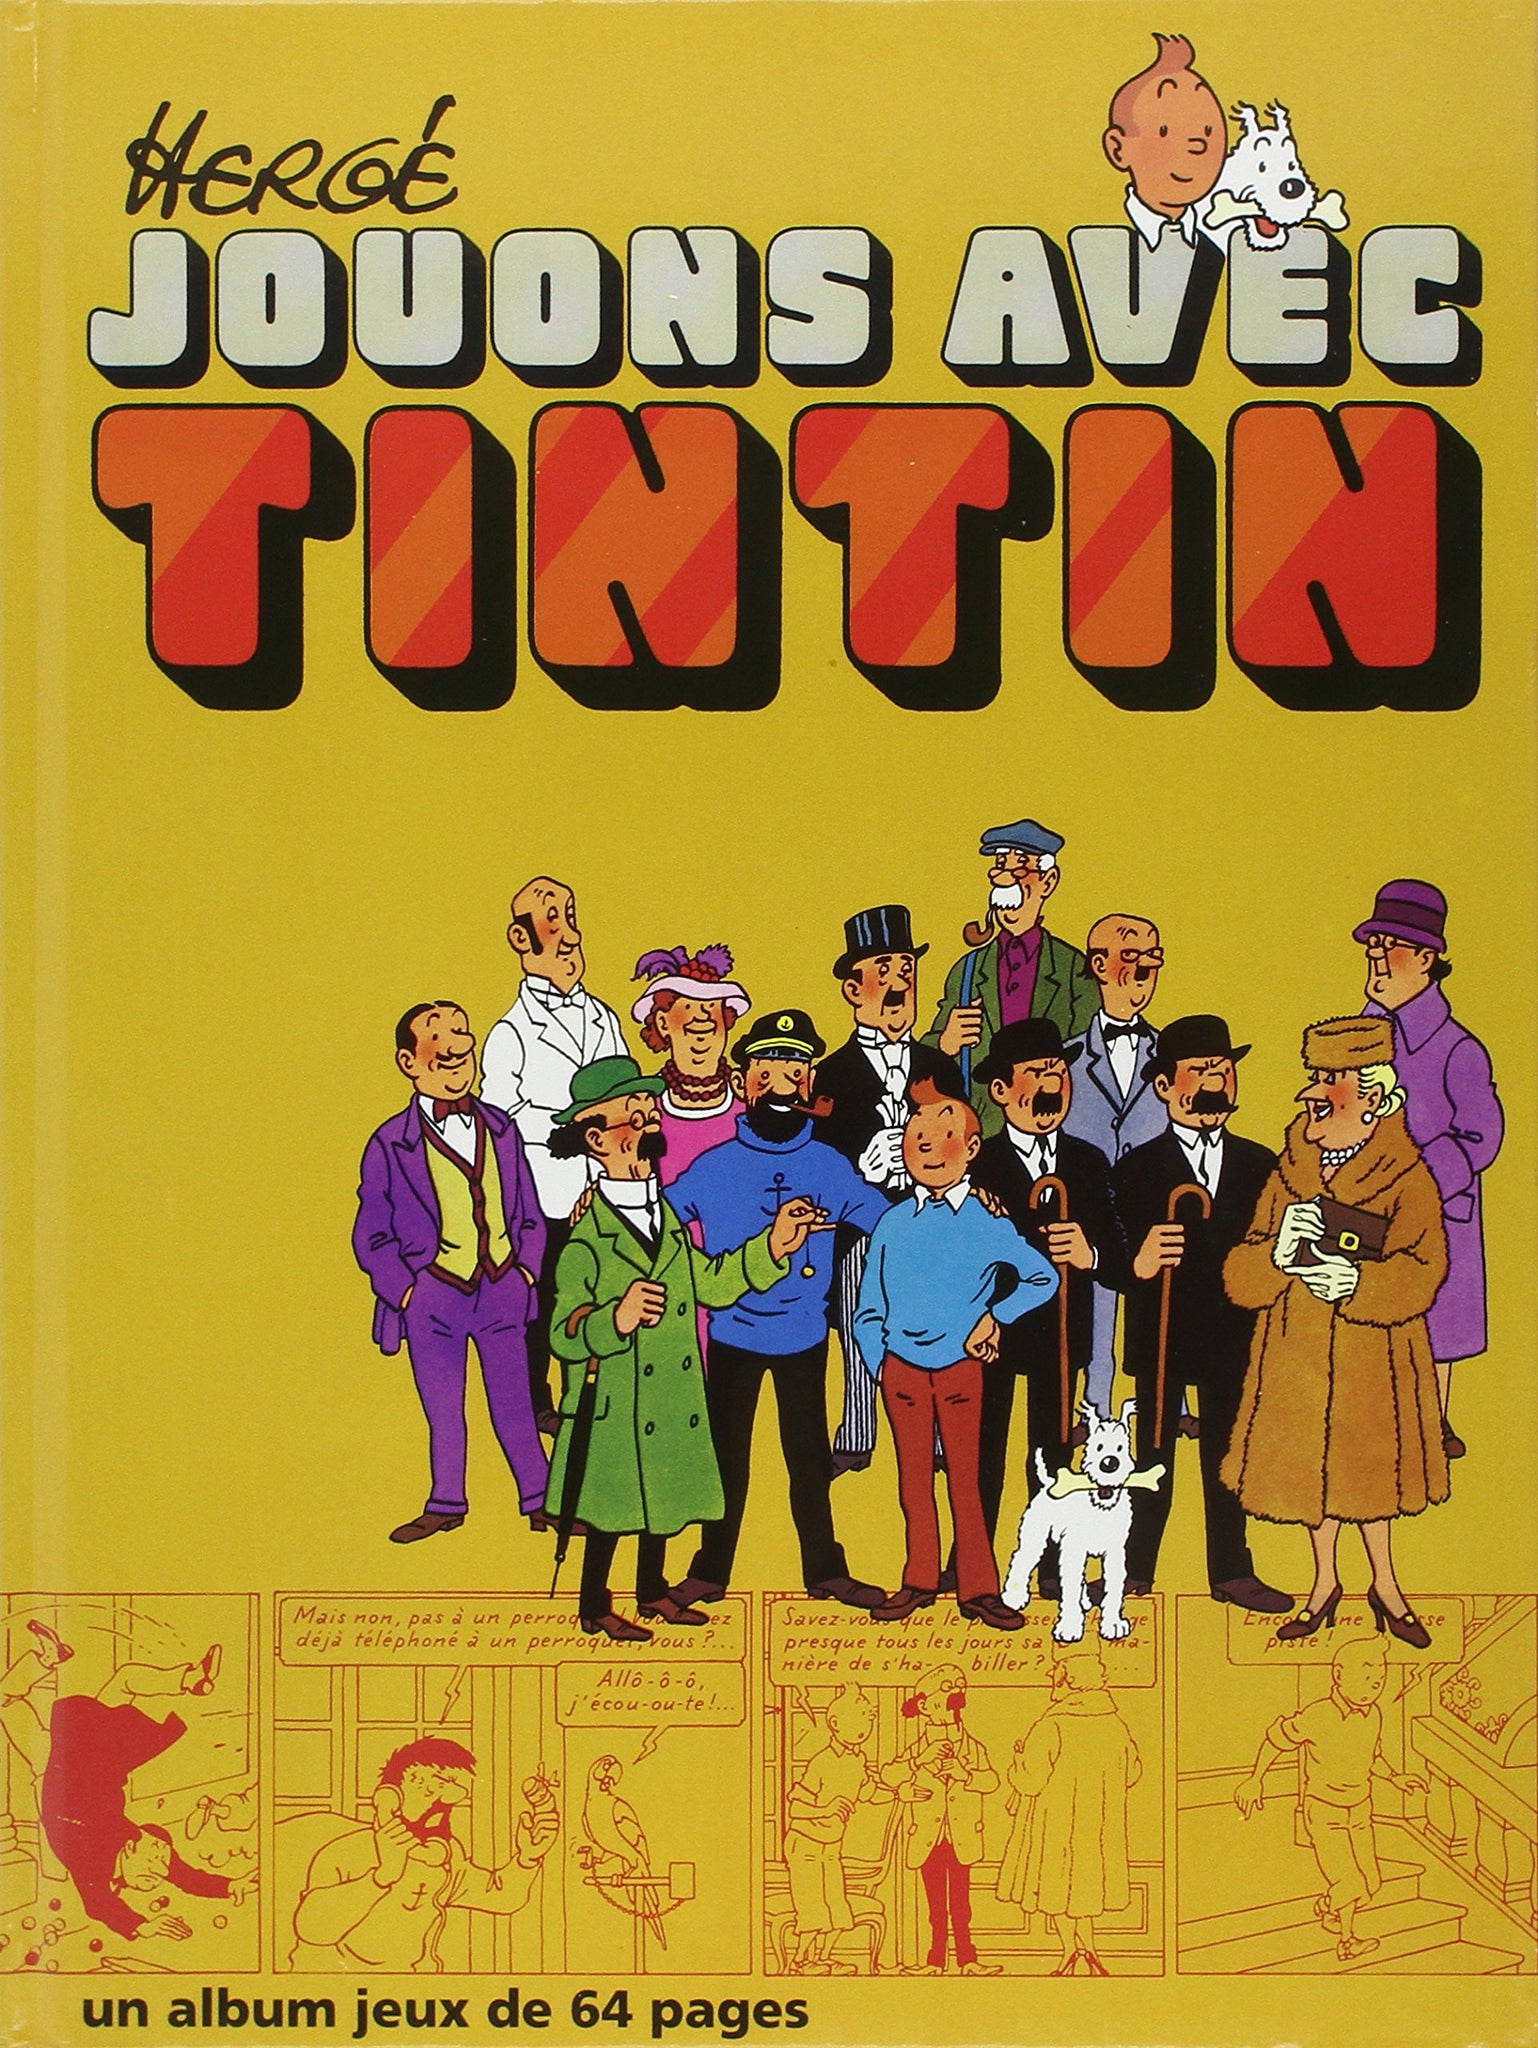 HERGÉ: Jouons avec Tintin à Moulinsart